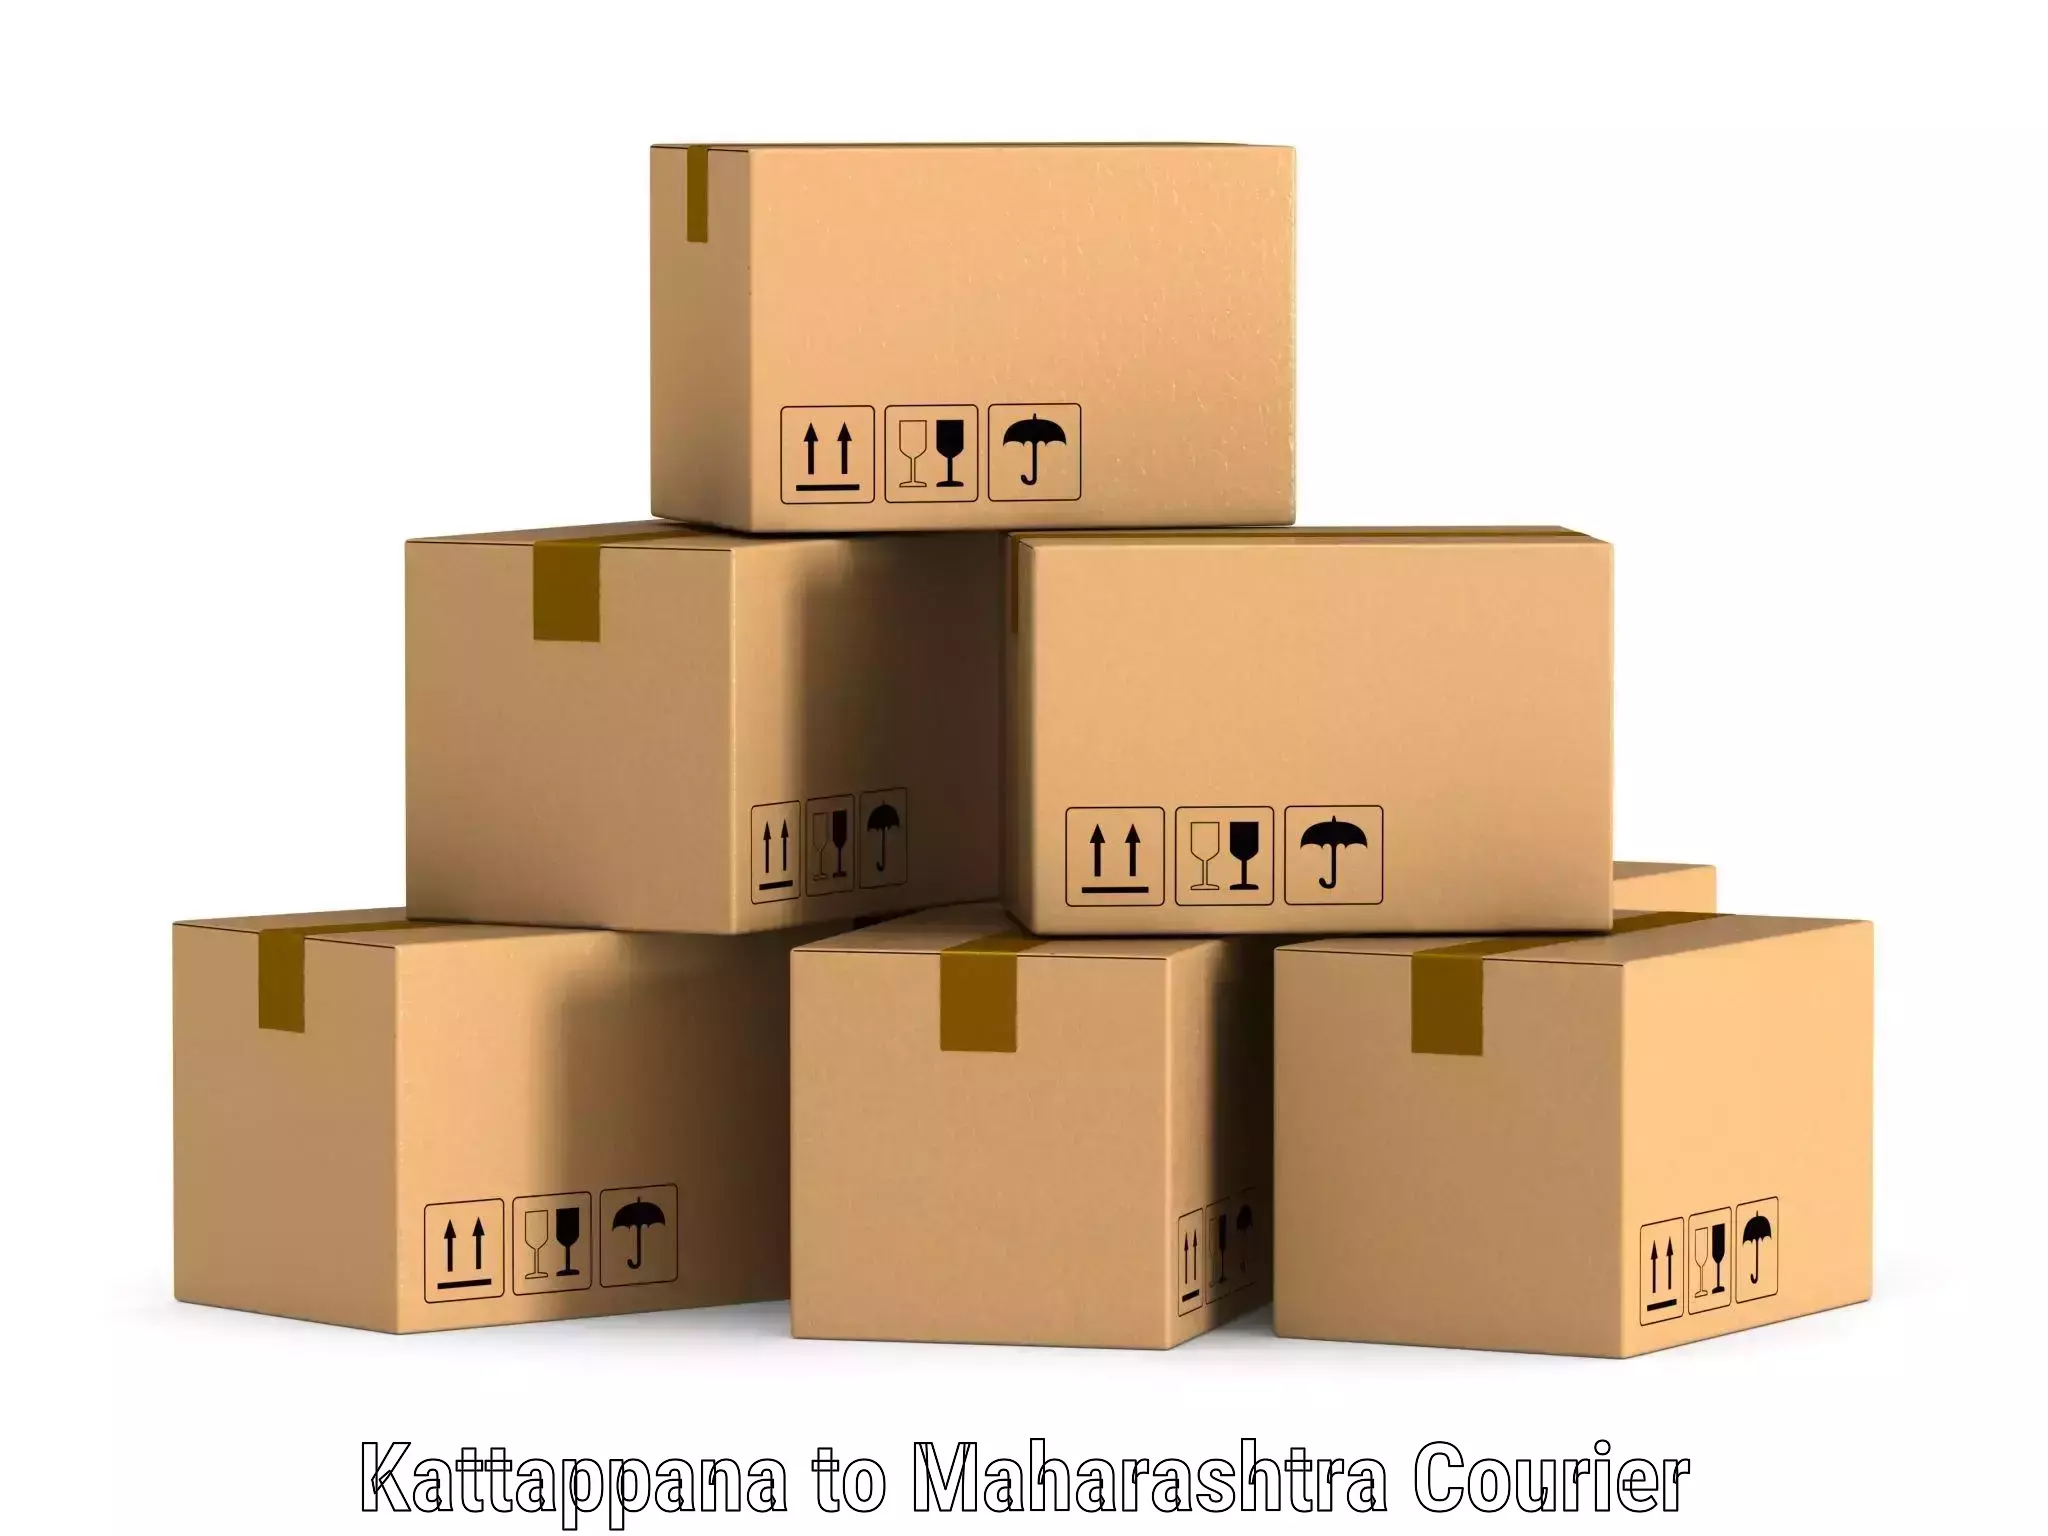 Tech-enabled shipping Kattappana to Maharashtra